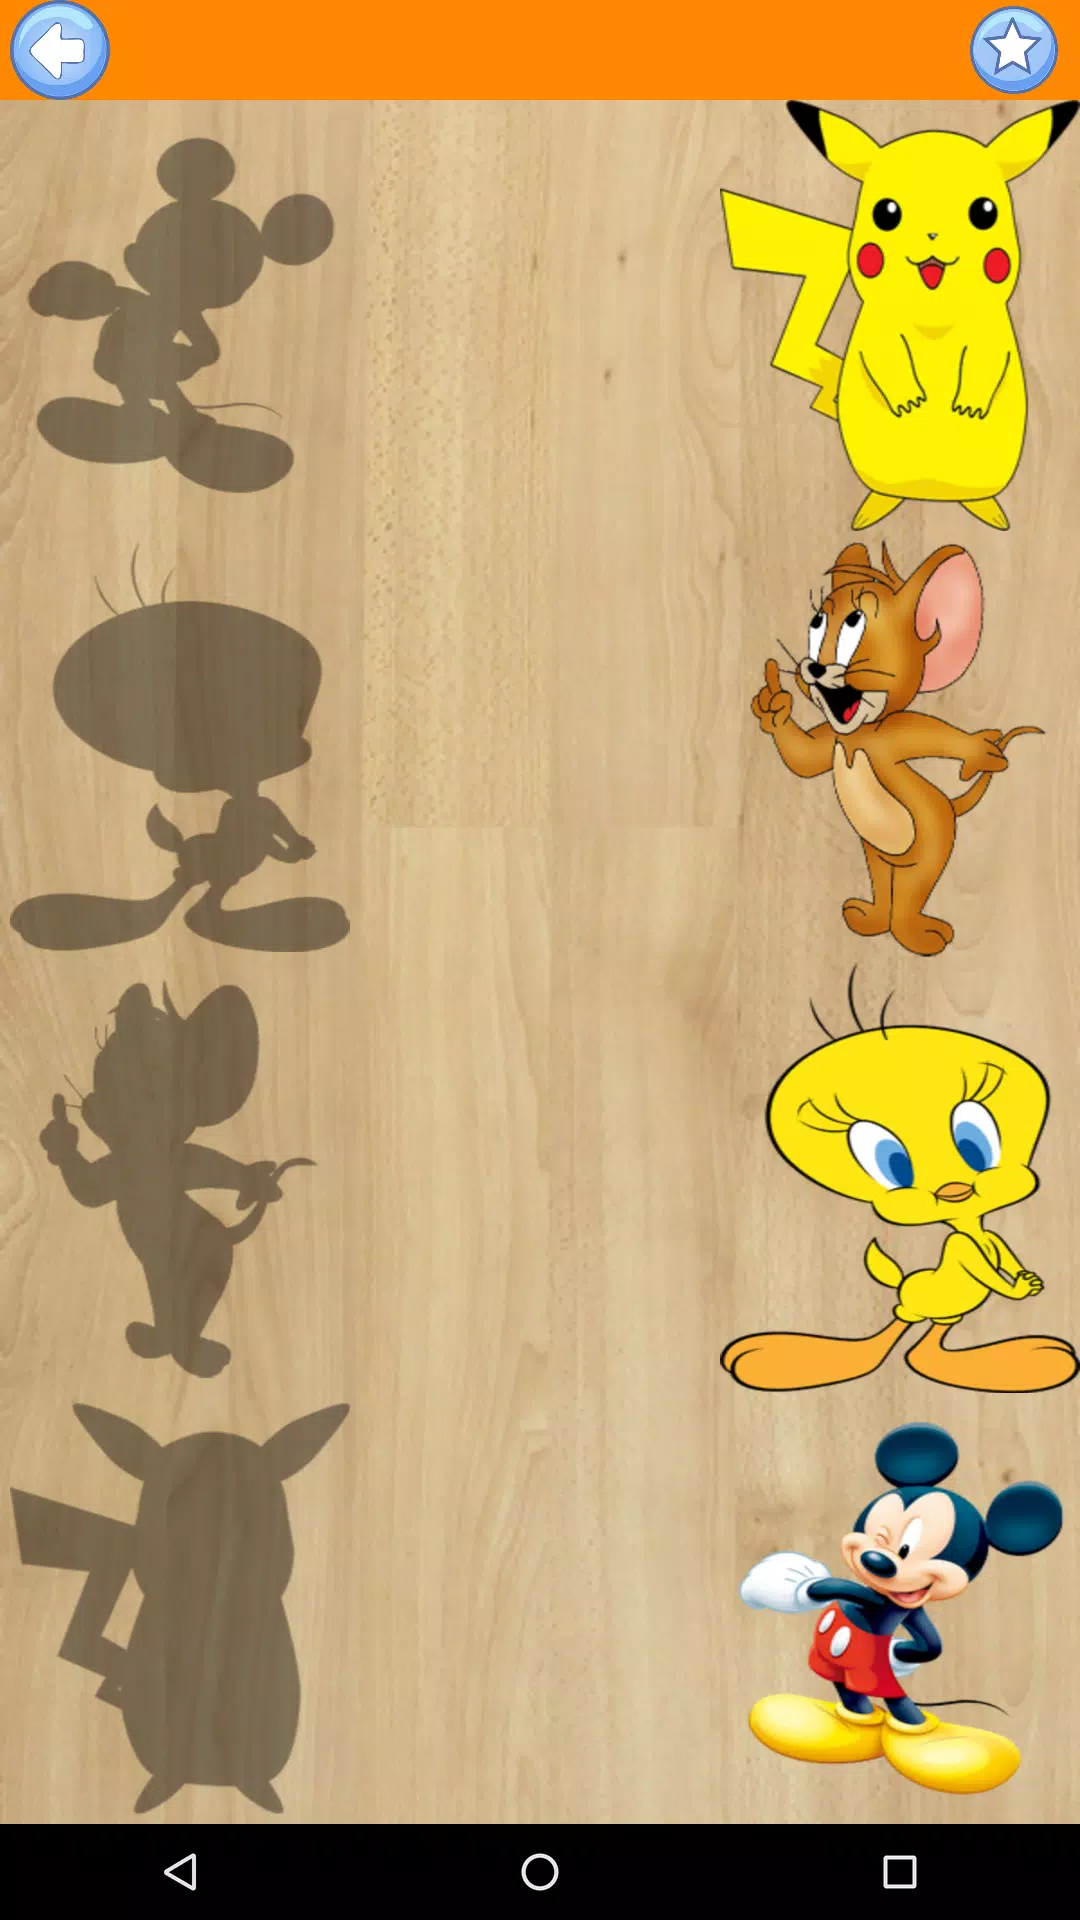 تعليم الاطفال - تركيب الصور للأطفال APK for Android Download